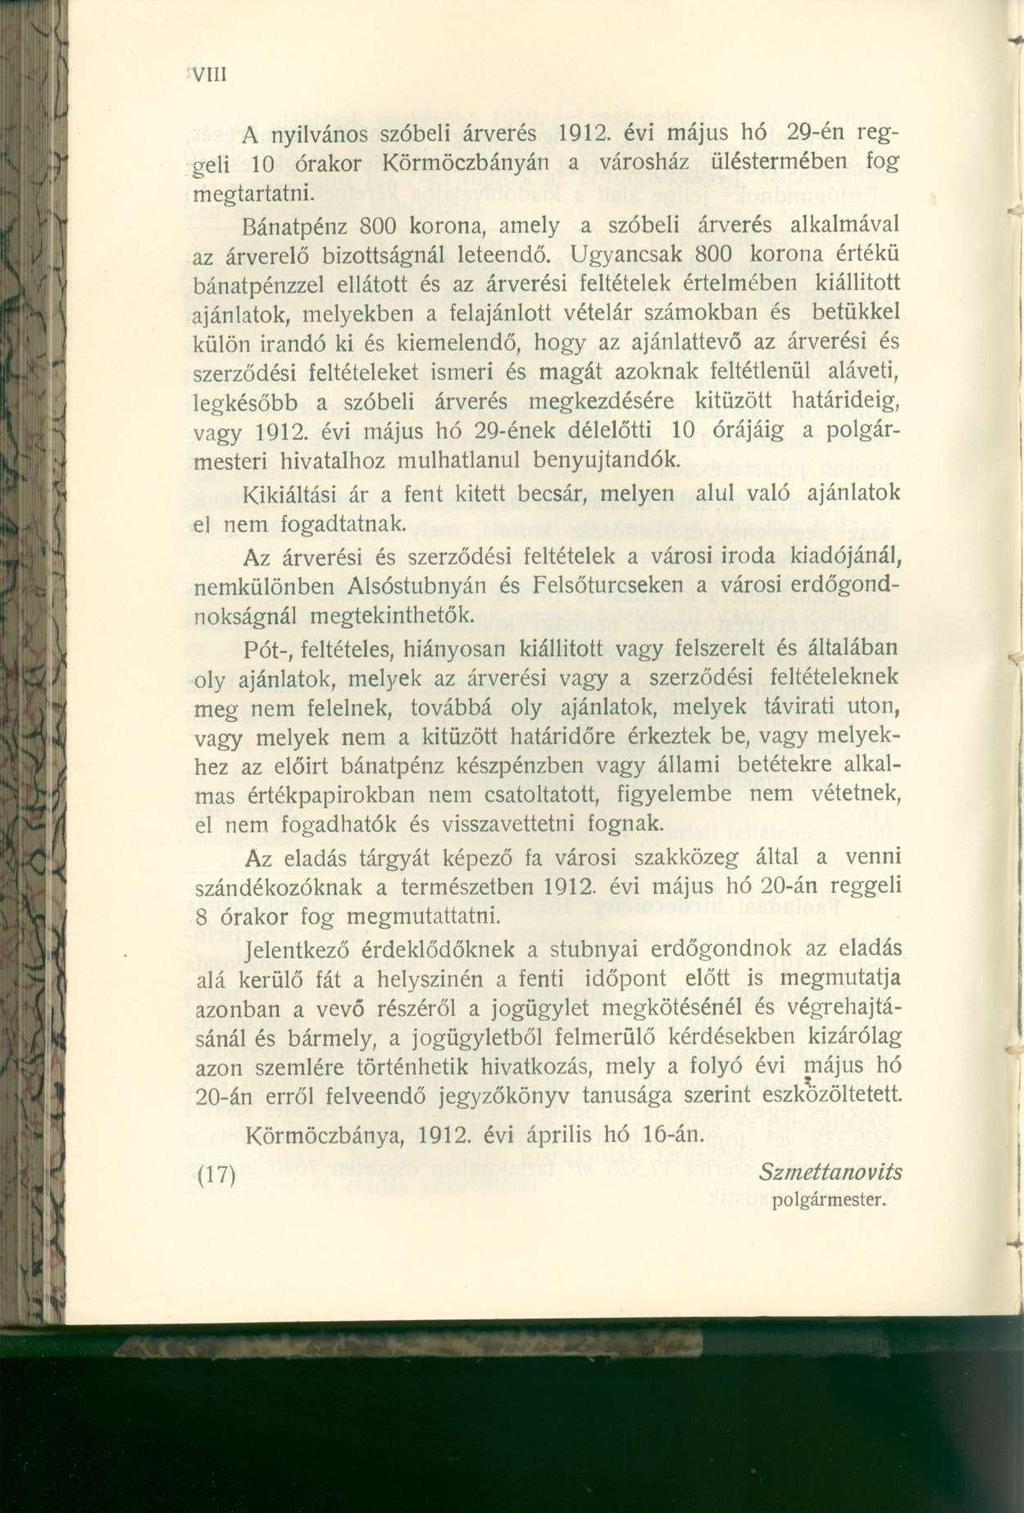 A nyilvános szóbeli árverés 1912. évi május hó 29-én reggeli 10 órakor Körmöczbányán a városház üléstermében fog megtartatni.